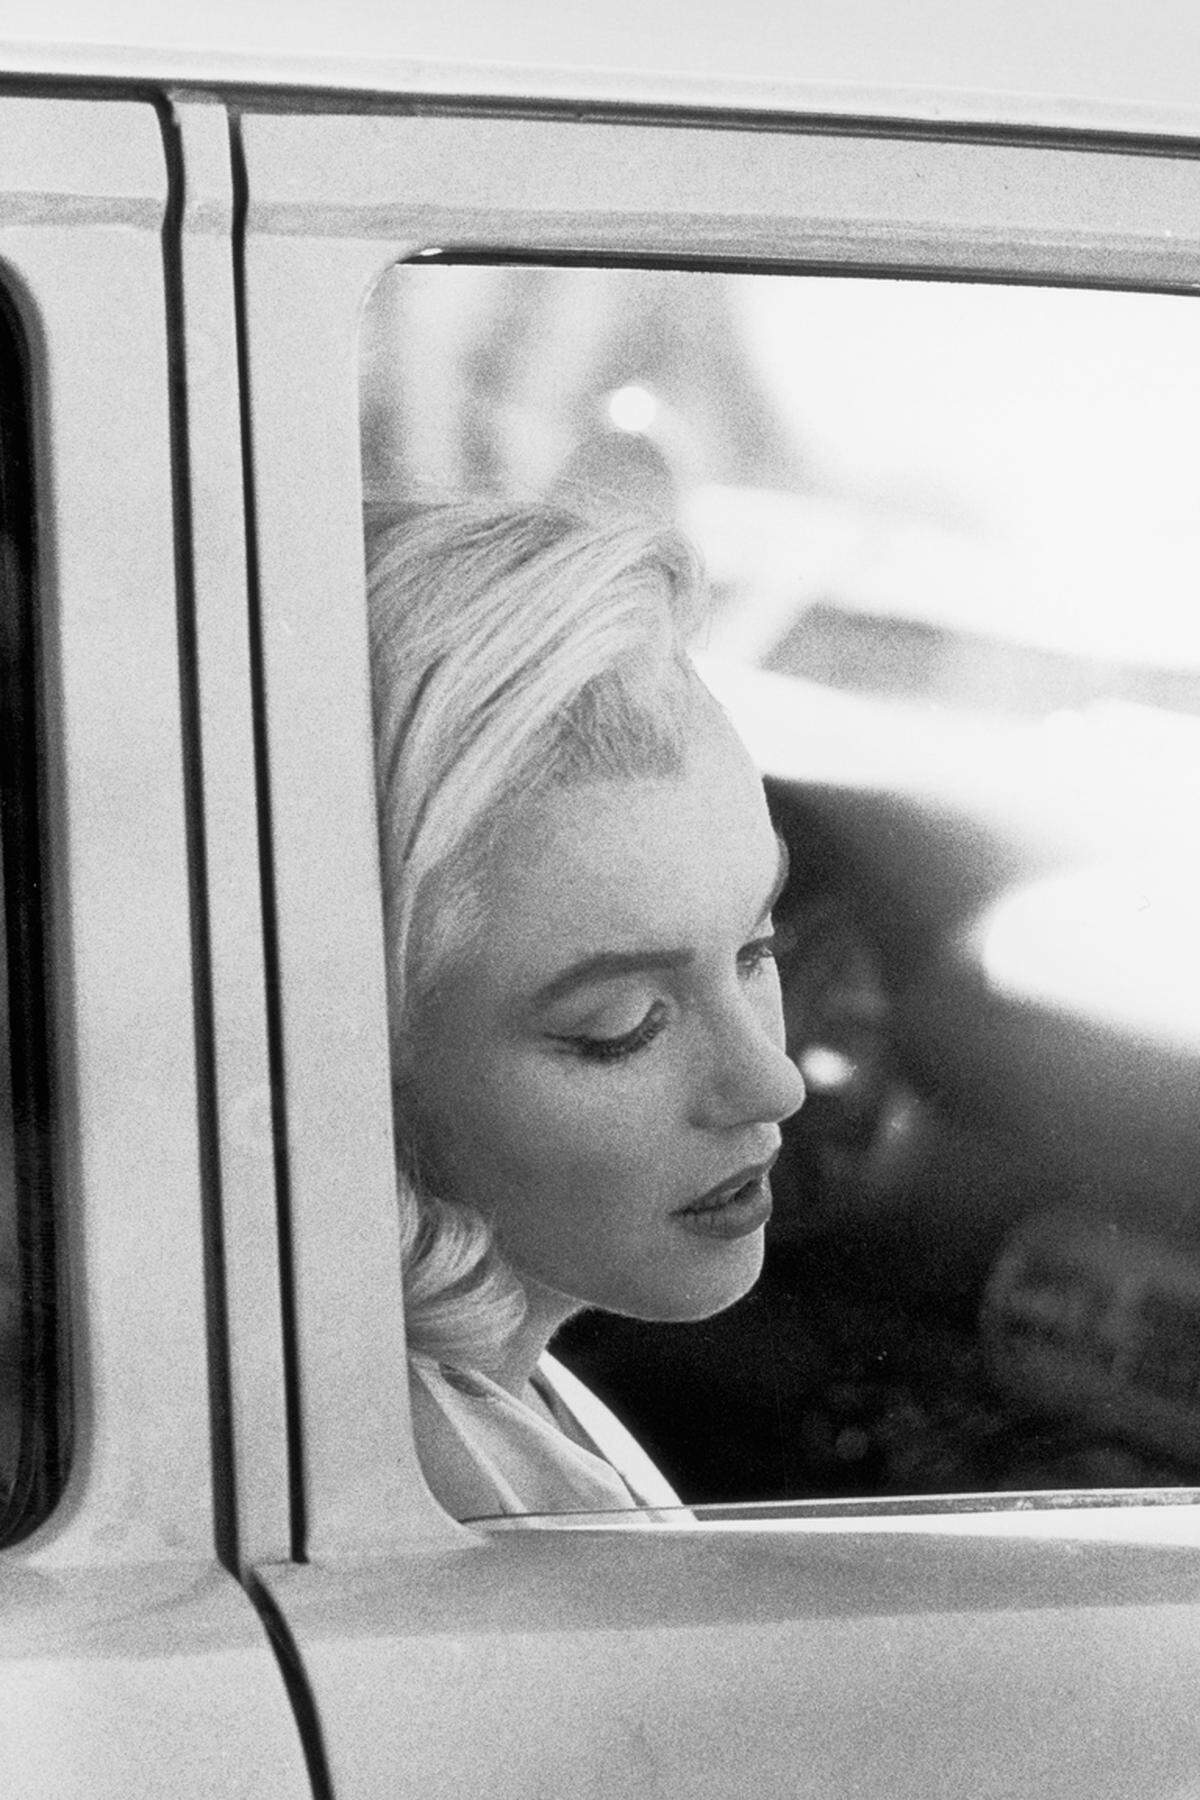 Stilikone. Marilyn Monroe bei den Dreharbeiten zu „The Misfits“ (mit dem deutschen Untertitel „Nicht gesellschaftsfähig“) von 1961, nach dem Drehbuch von Arthur Miller, ihrem damaligen Ehemann, das er eigens für sie geschrieben hatte.